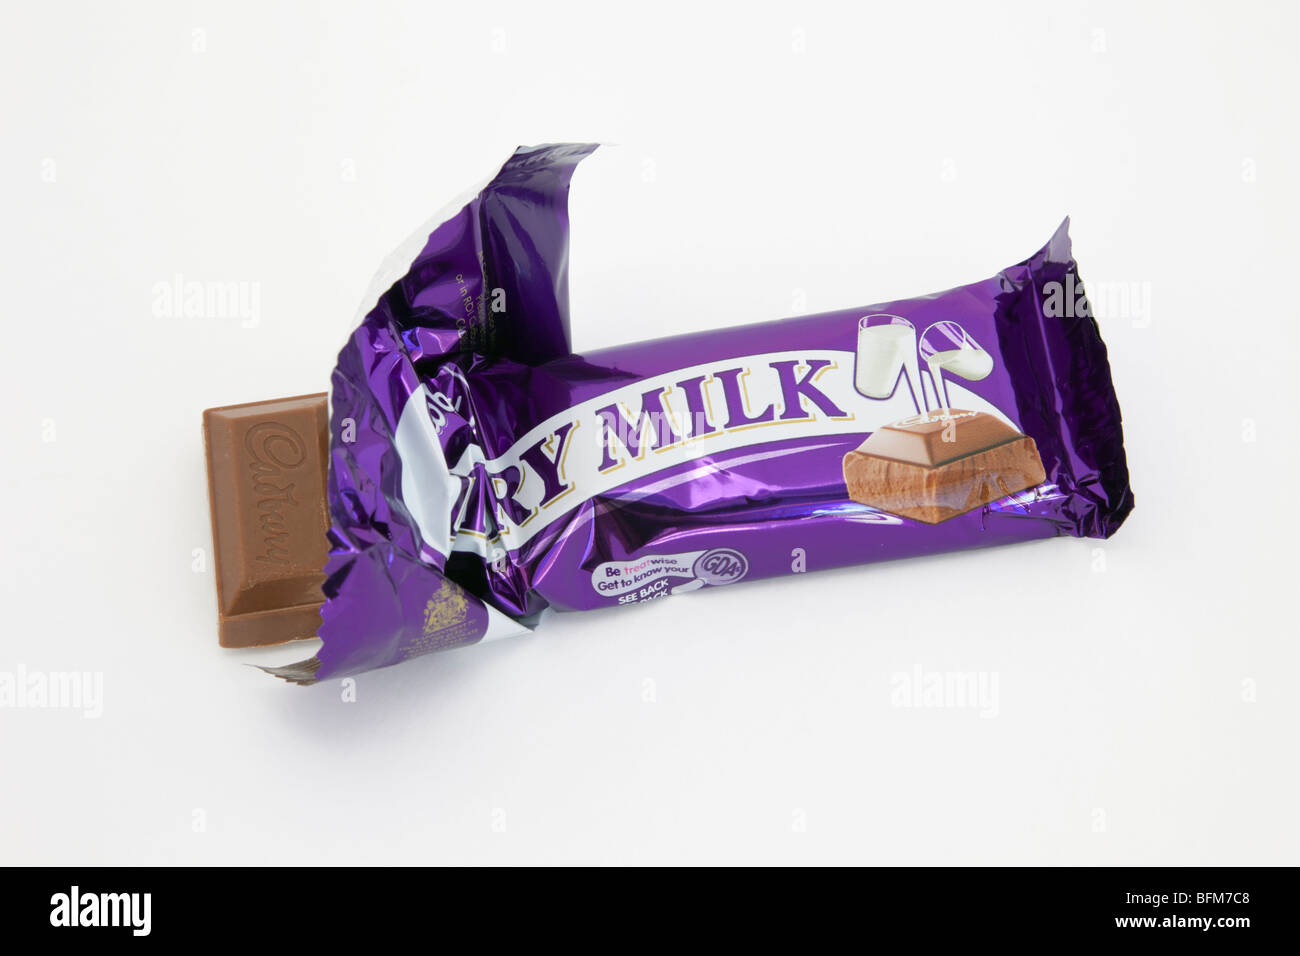 Parte superiore verso il basso di una della Cadbury Dairy Milk chocolate bar aperto in involucro in alluminio isolato su uno sfondo bianco. Inghilterra, Regno Unito, Gran Bretagna. Foto Stock